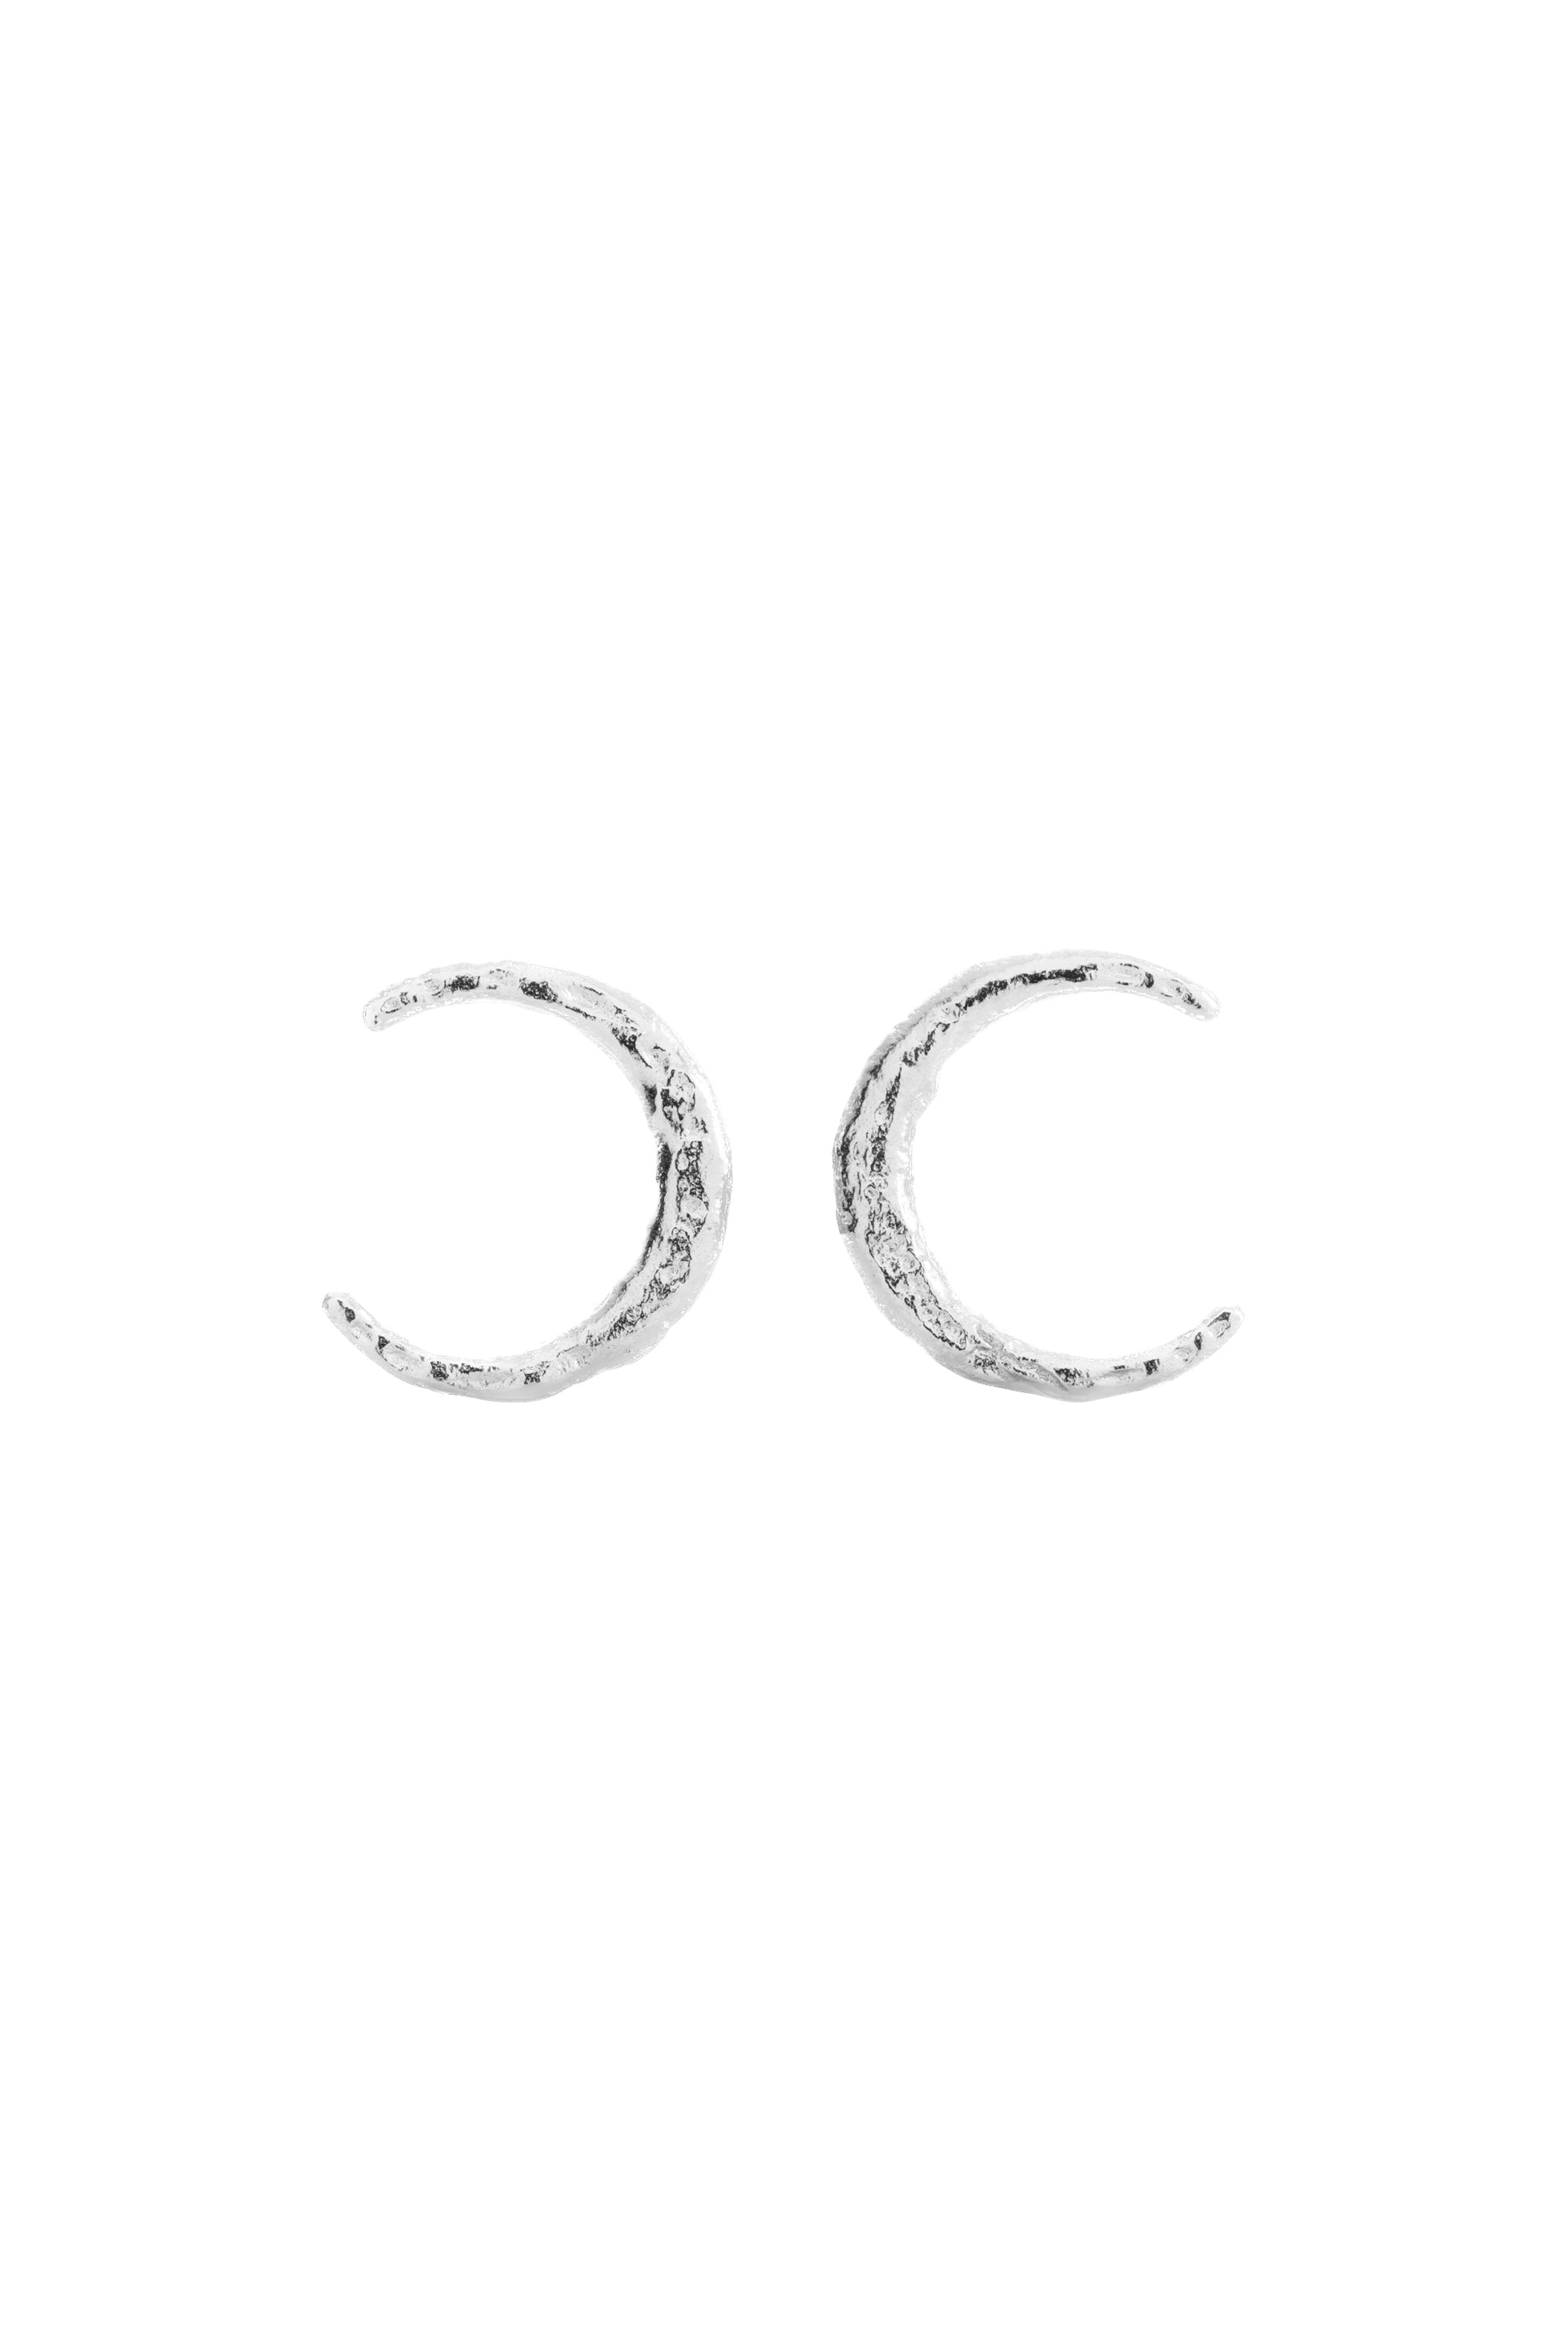 Onehe Luna Stud Earrings - Silver